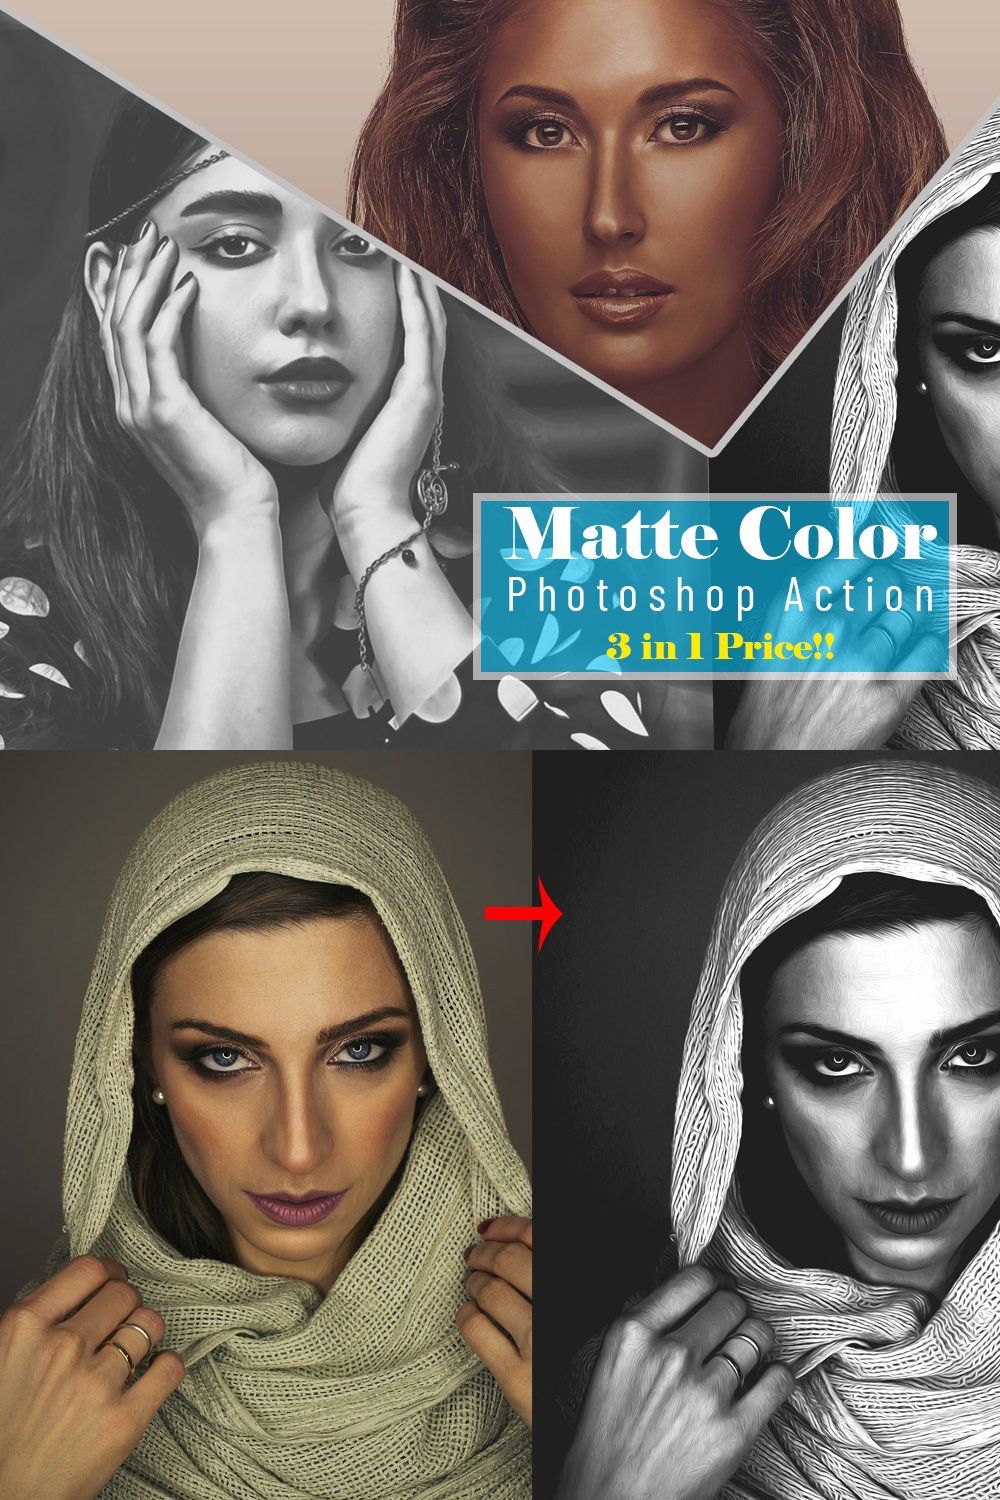 Matte Color Photoshop Action pinterest preview image.